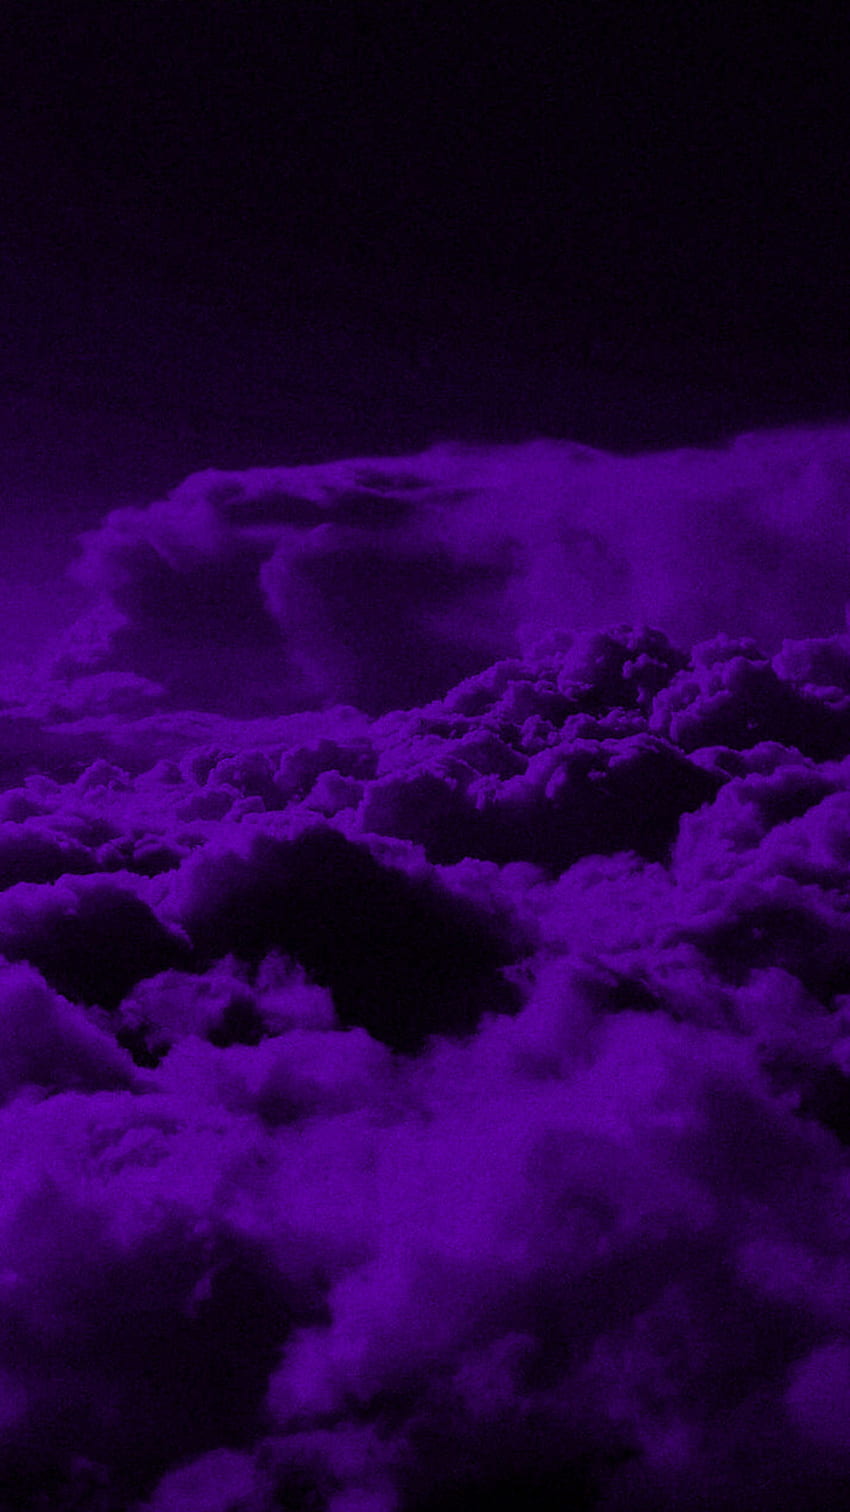 A purple toned image of a cloud - Dark purple